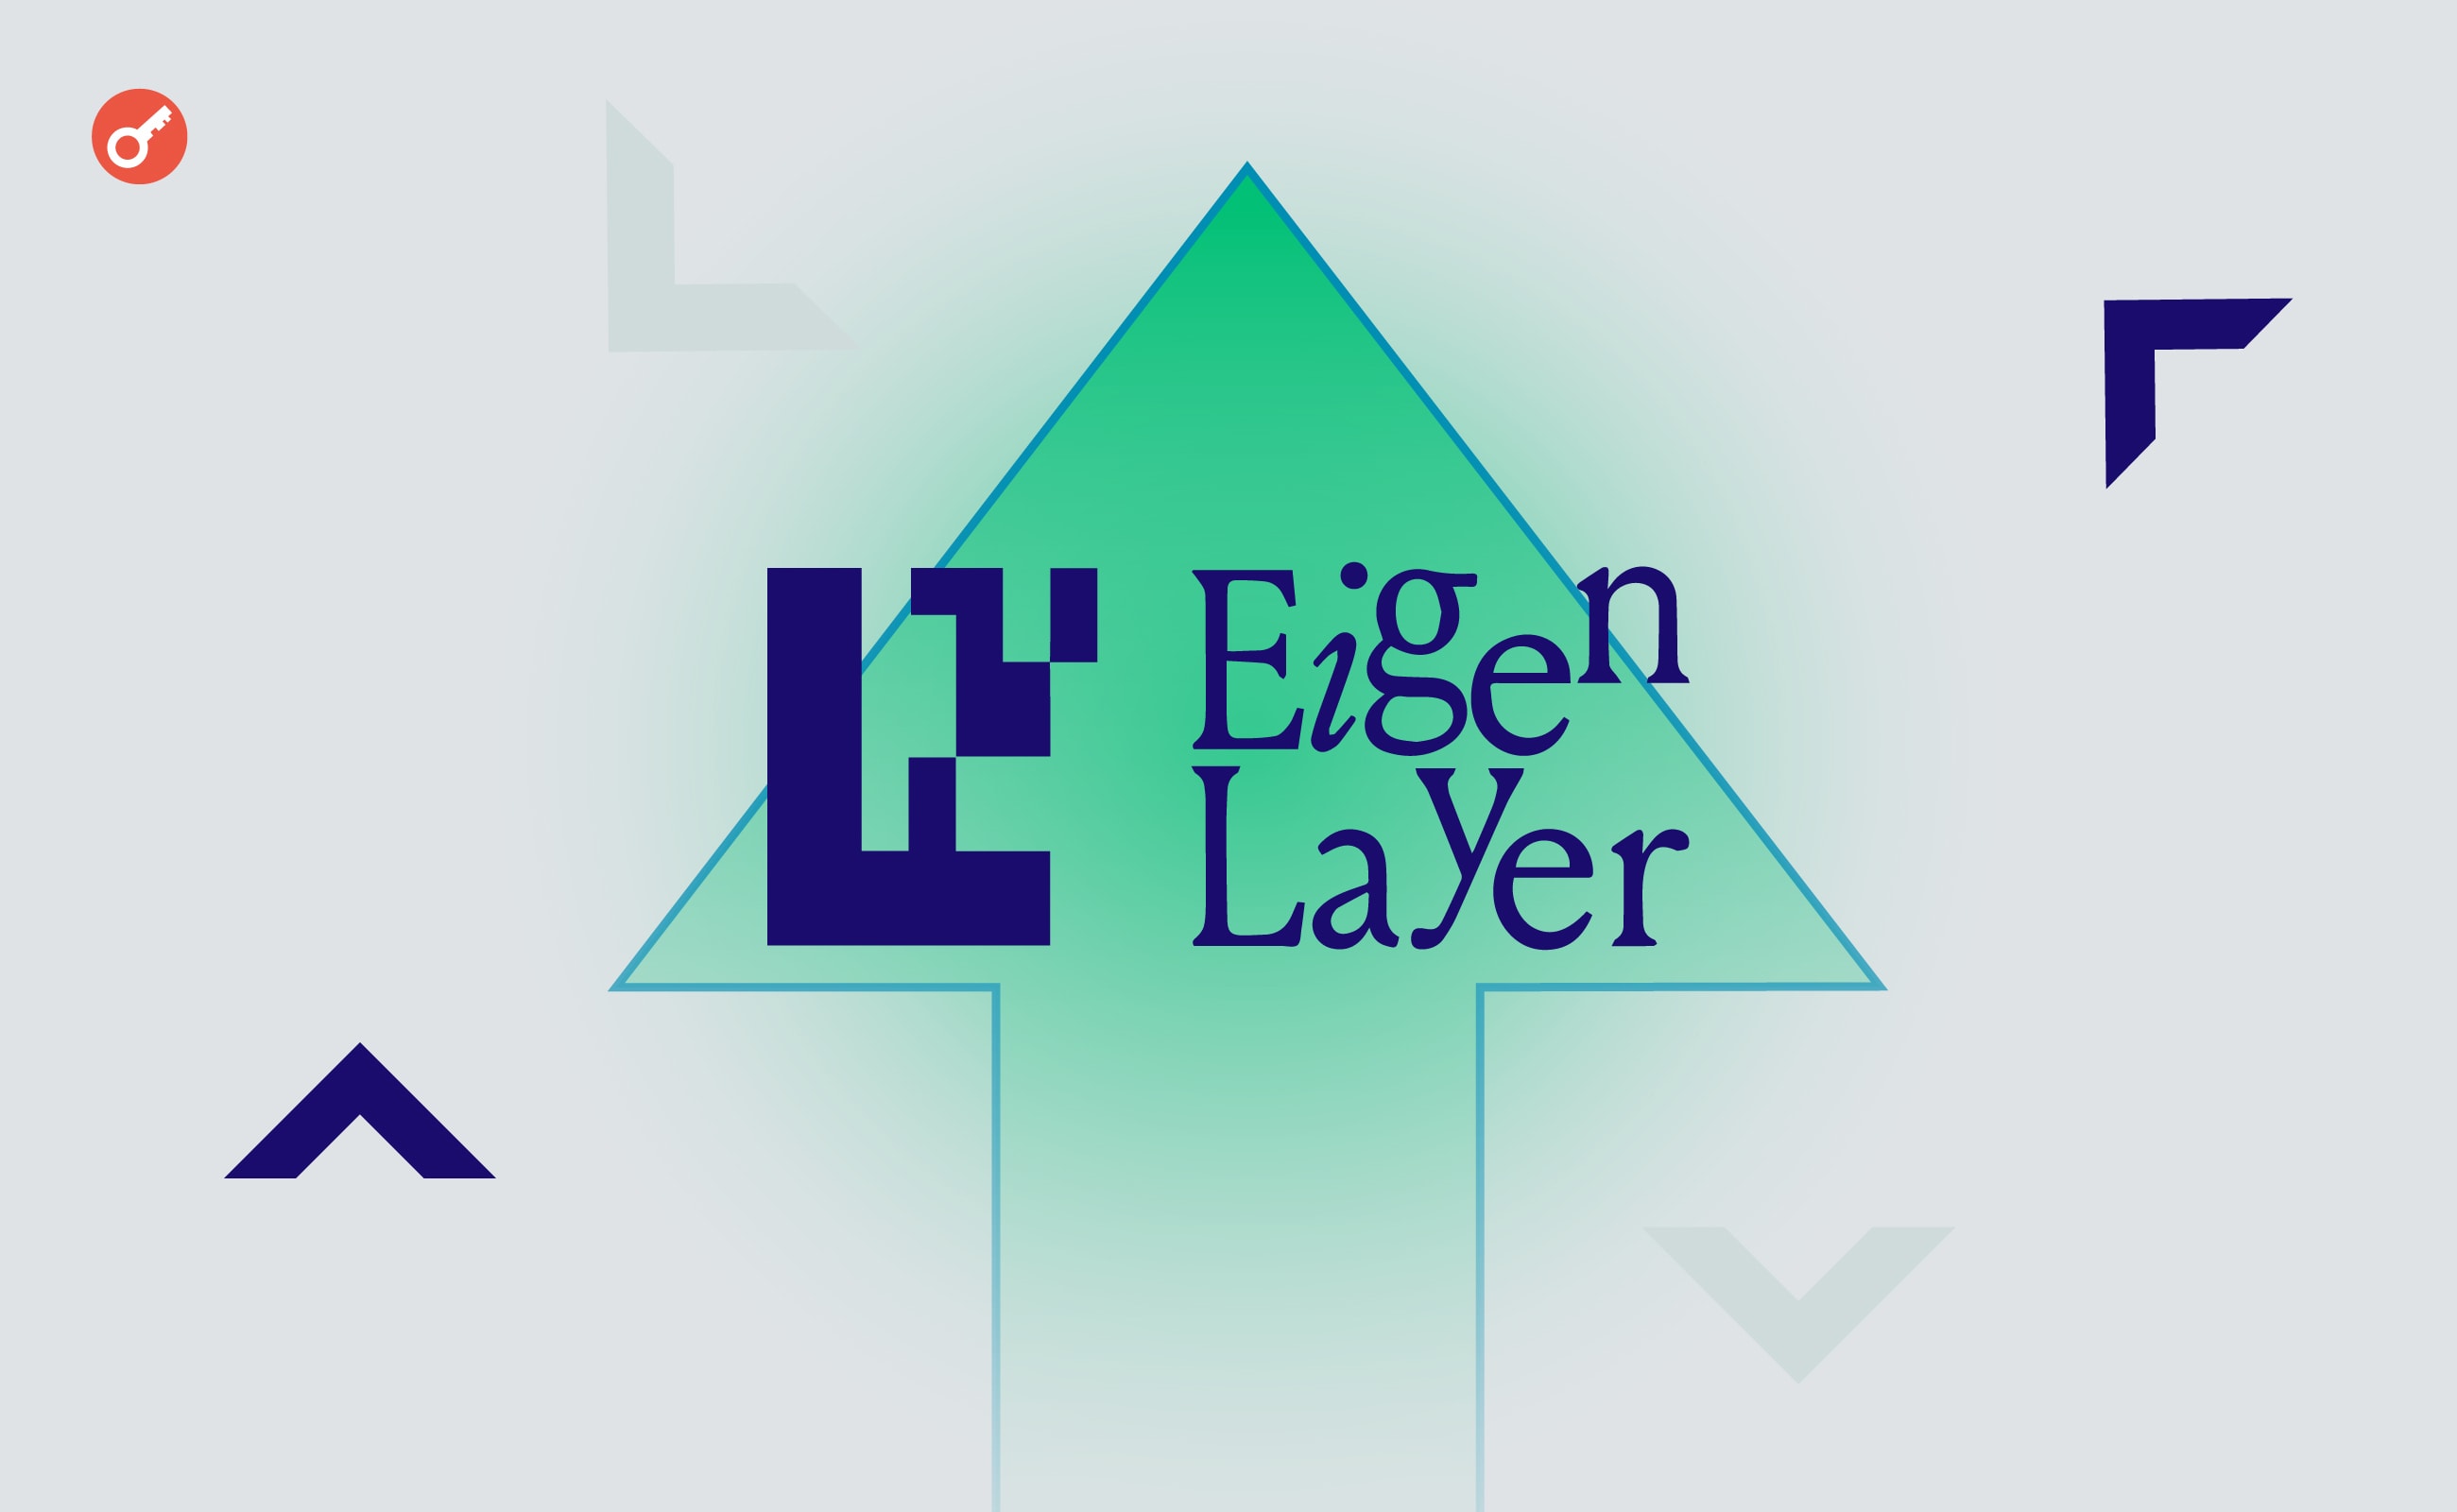 Разработчика Ethereum раскритиковали из-за дорогостоящих консультаций для EigenLayer. Заглавный коллаж новости.